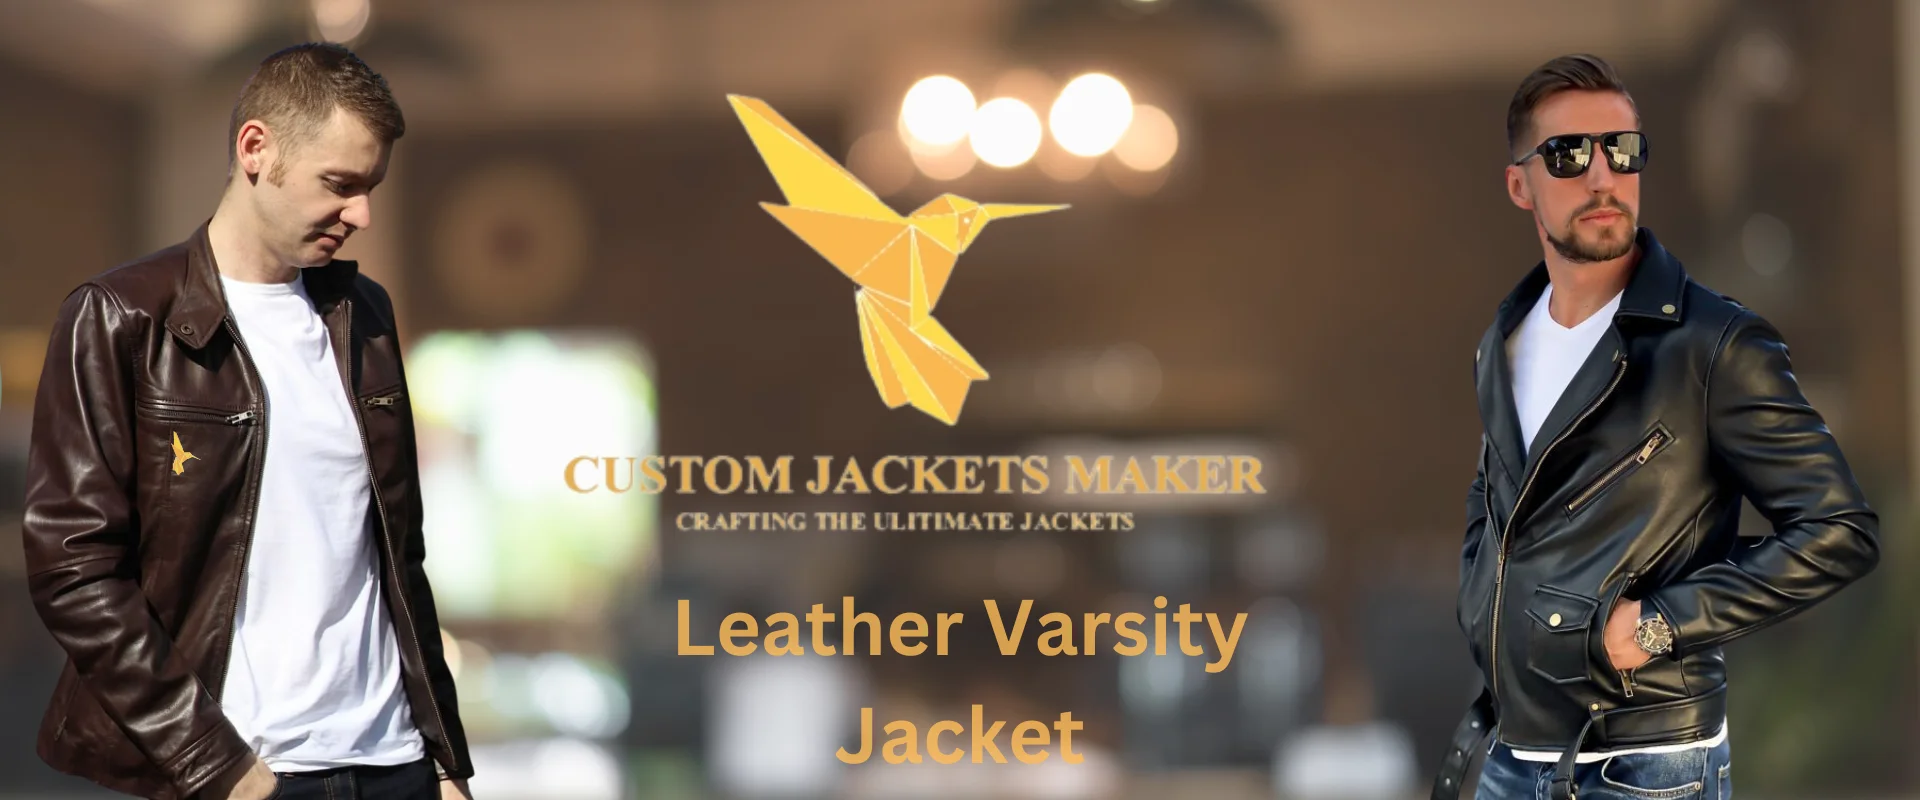 Banner Image of Leather Varsity Jacket 